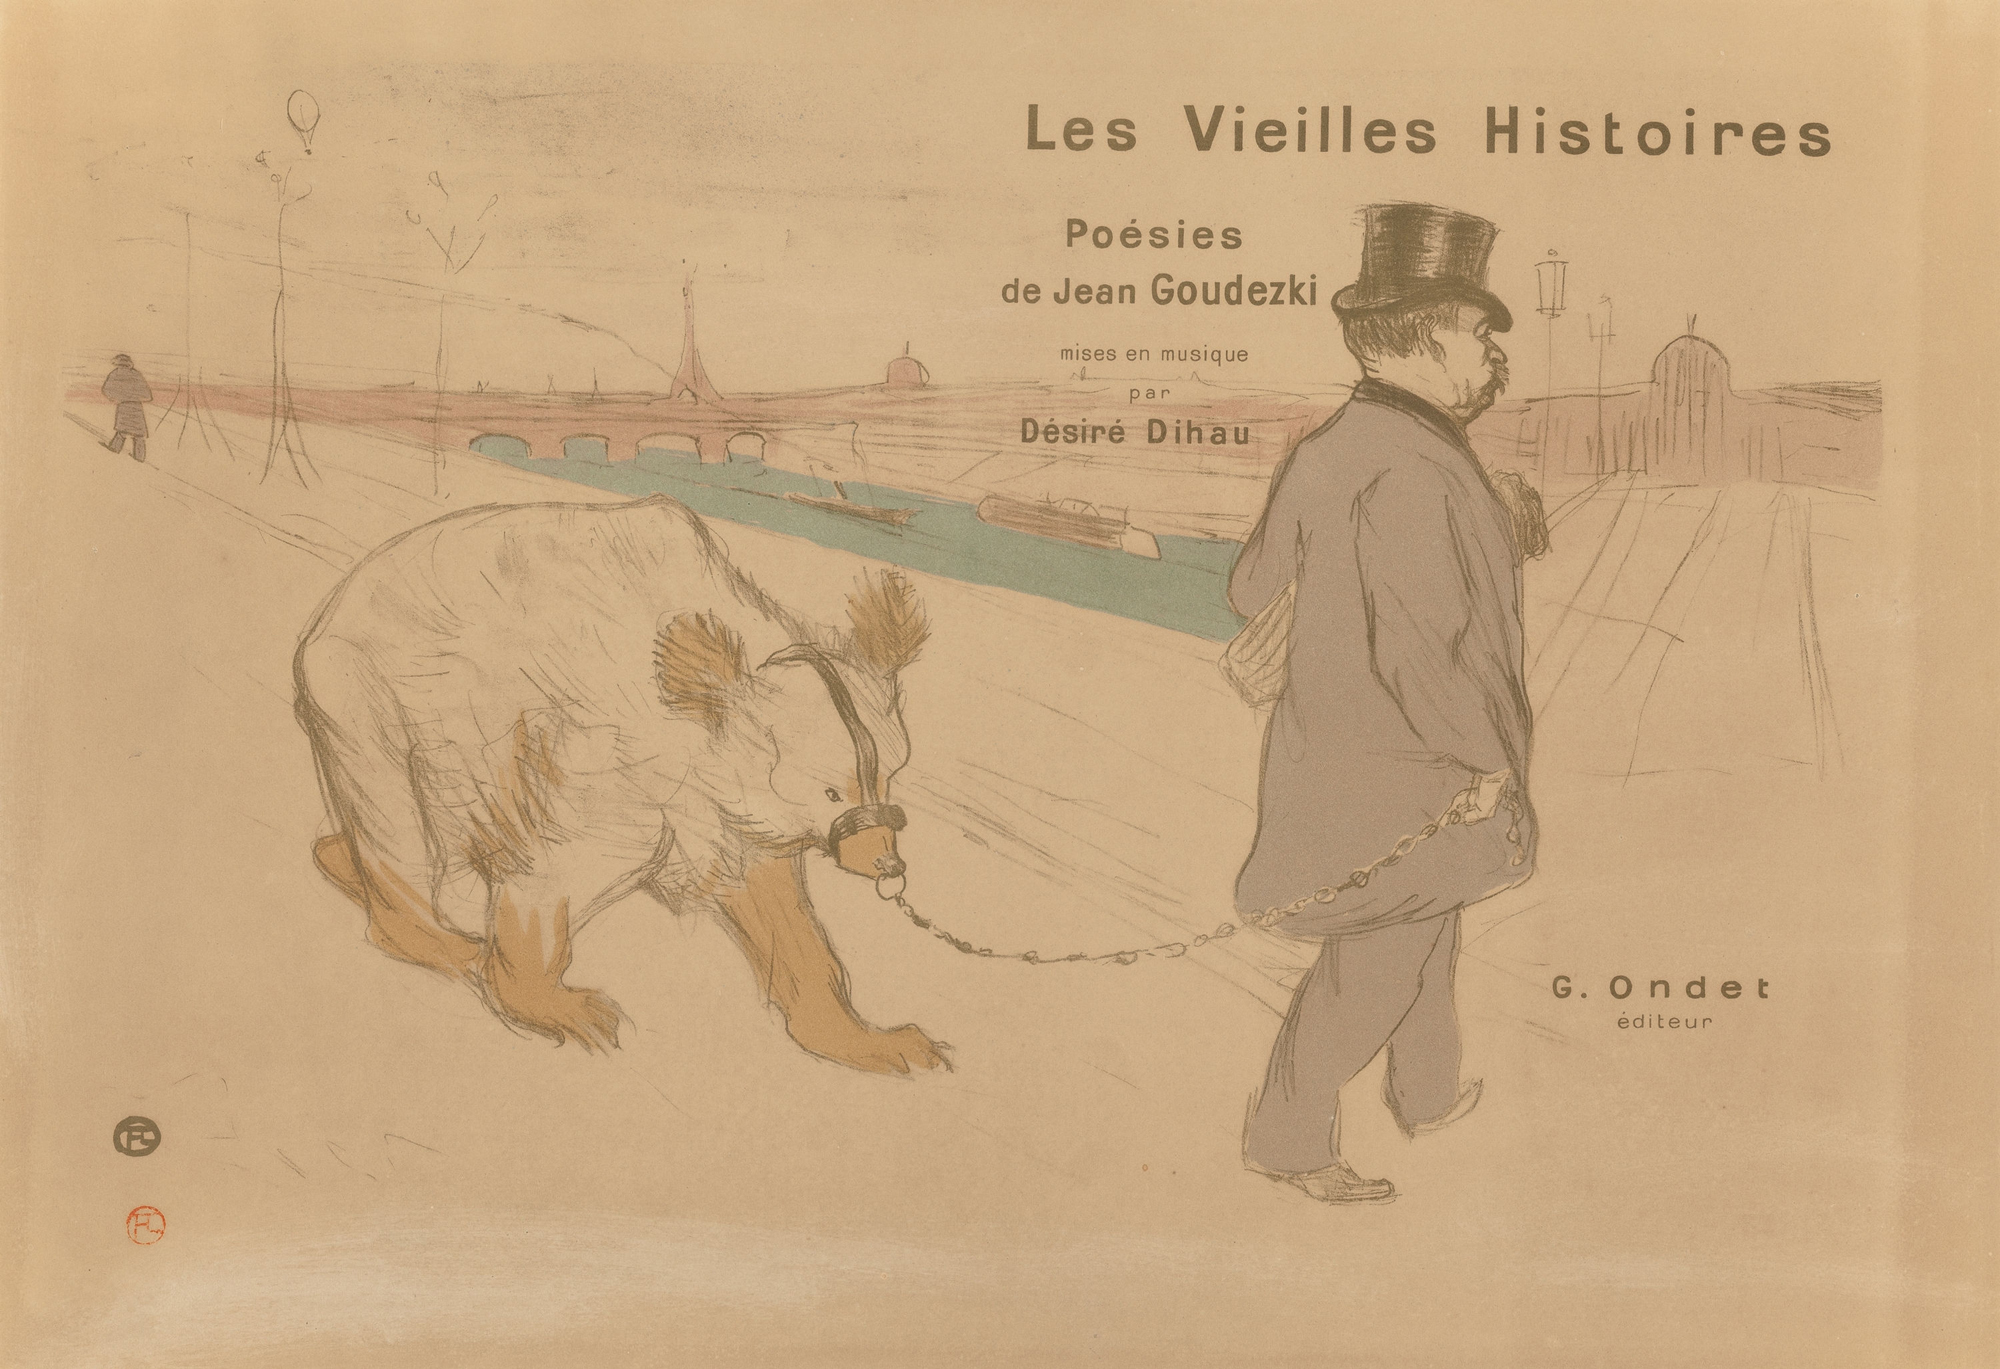 Signed Henri de Toulouse-Lautrec poster, ‘Les Vieilles Histoires,’ 1893 (est. $3,000+). Heritage Auctions image